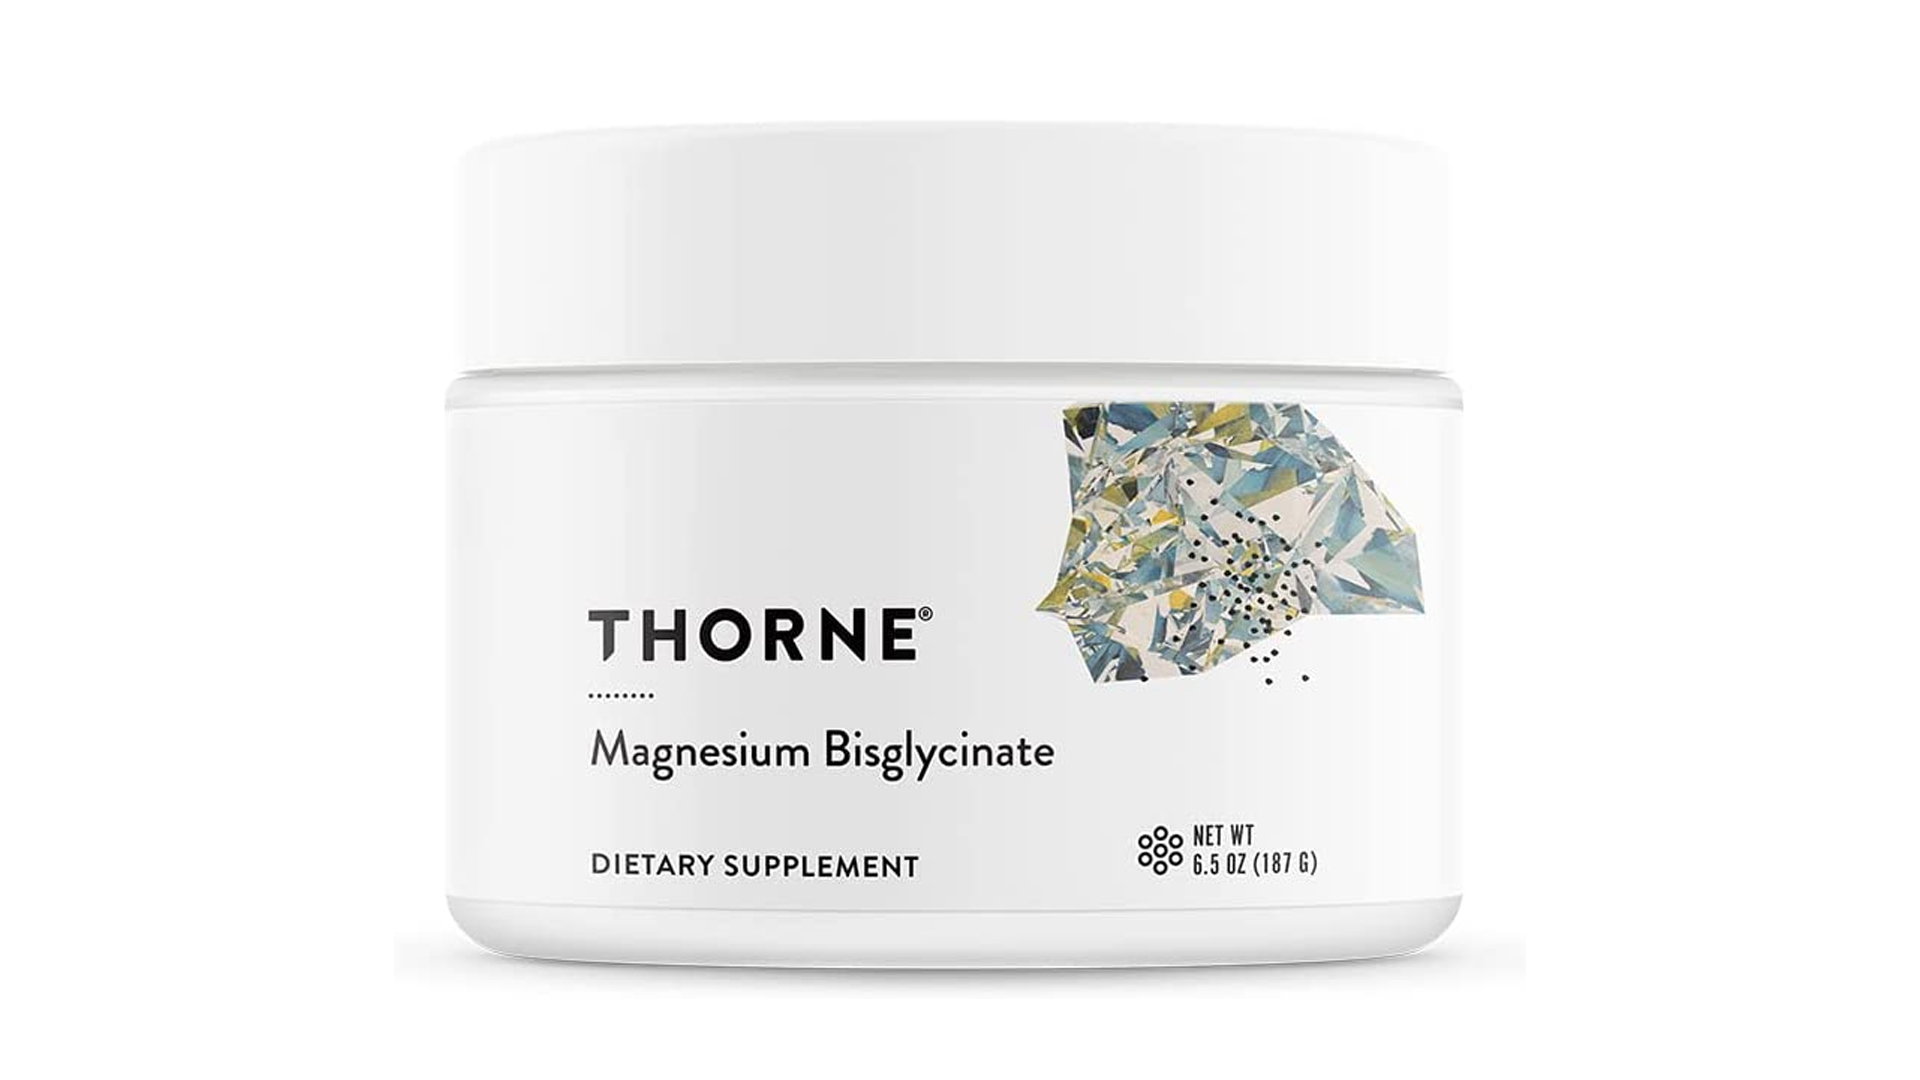 Throne magnesium bisglycinate supplement